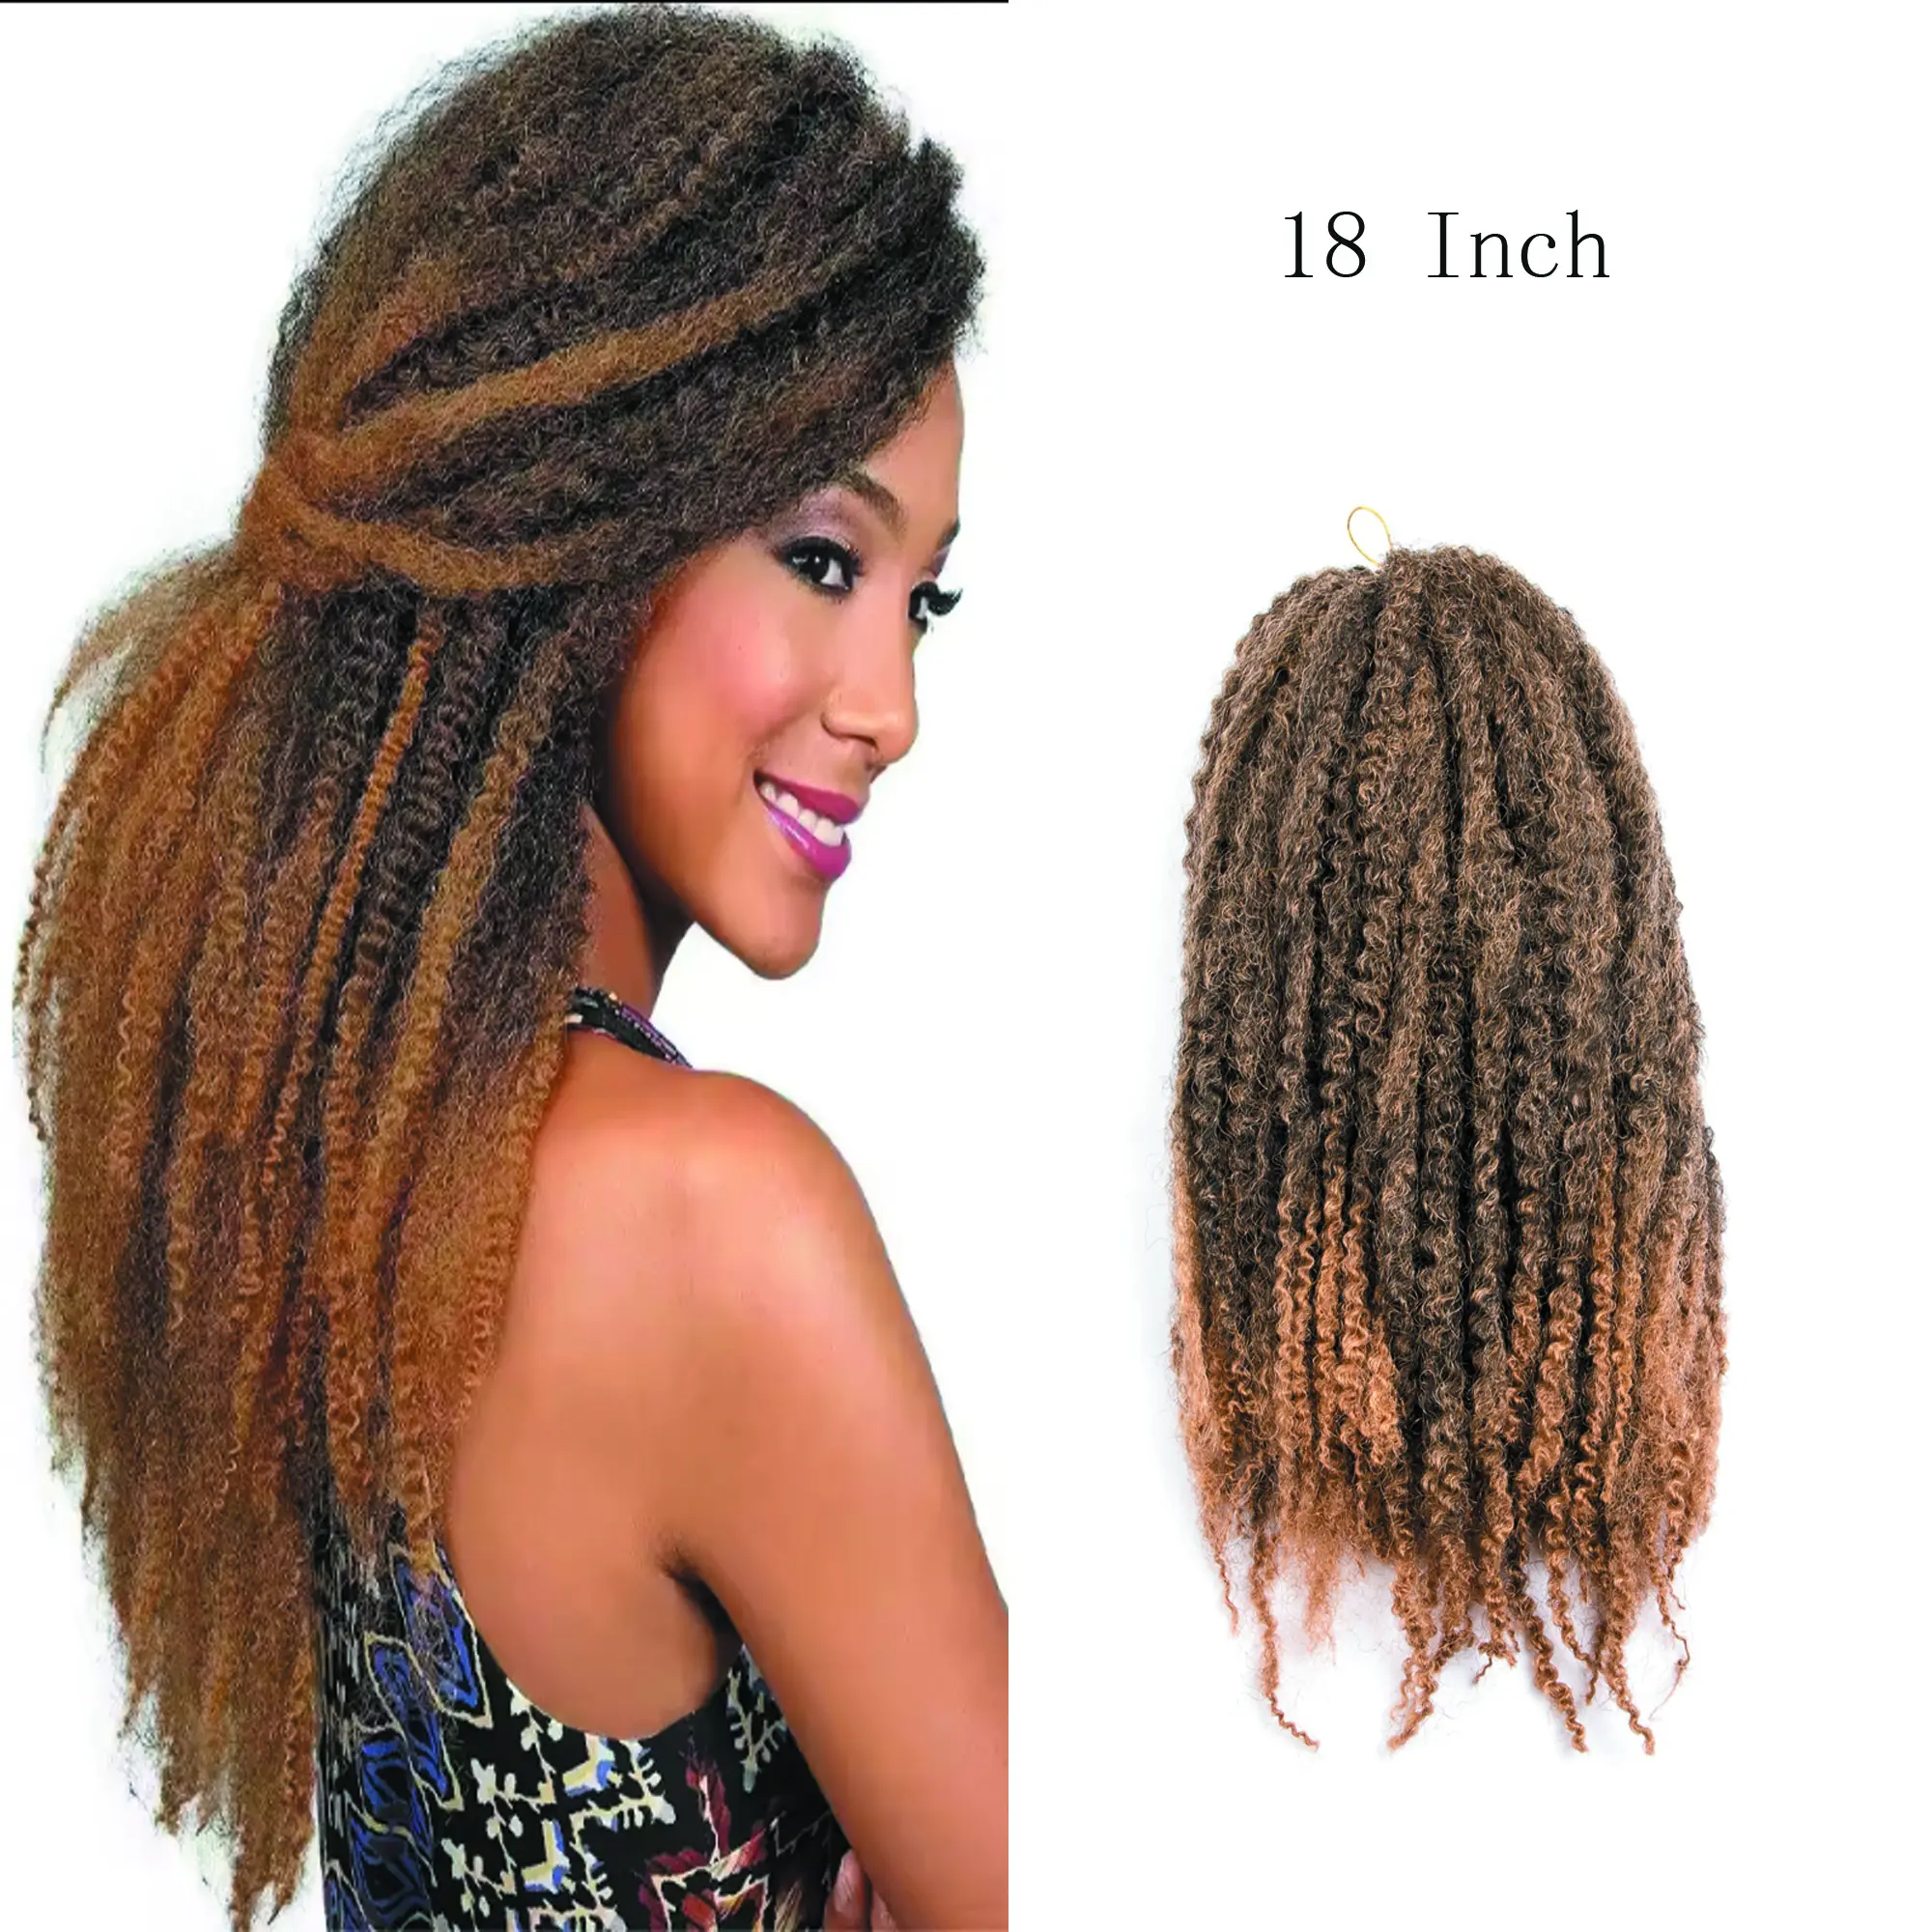 18 pollici HSJ Twist estensione dei capelli crochet Marley intrecciare 100g capelli sintetici alla rinfusa trecce uncinetto